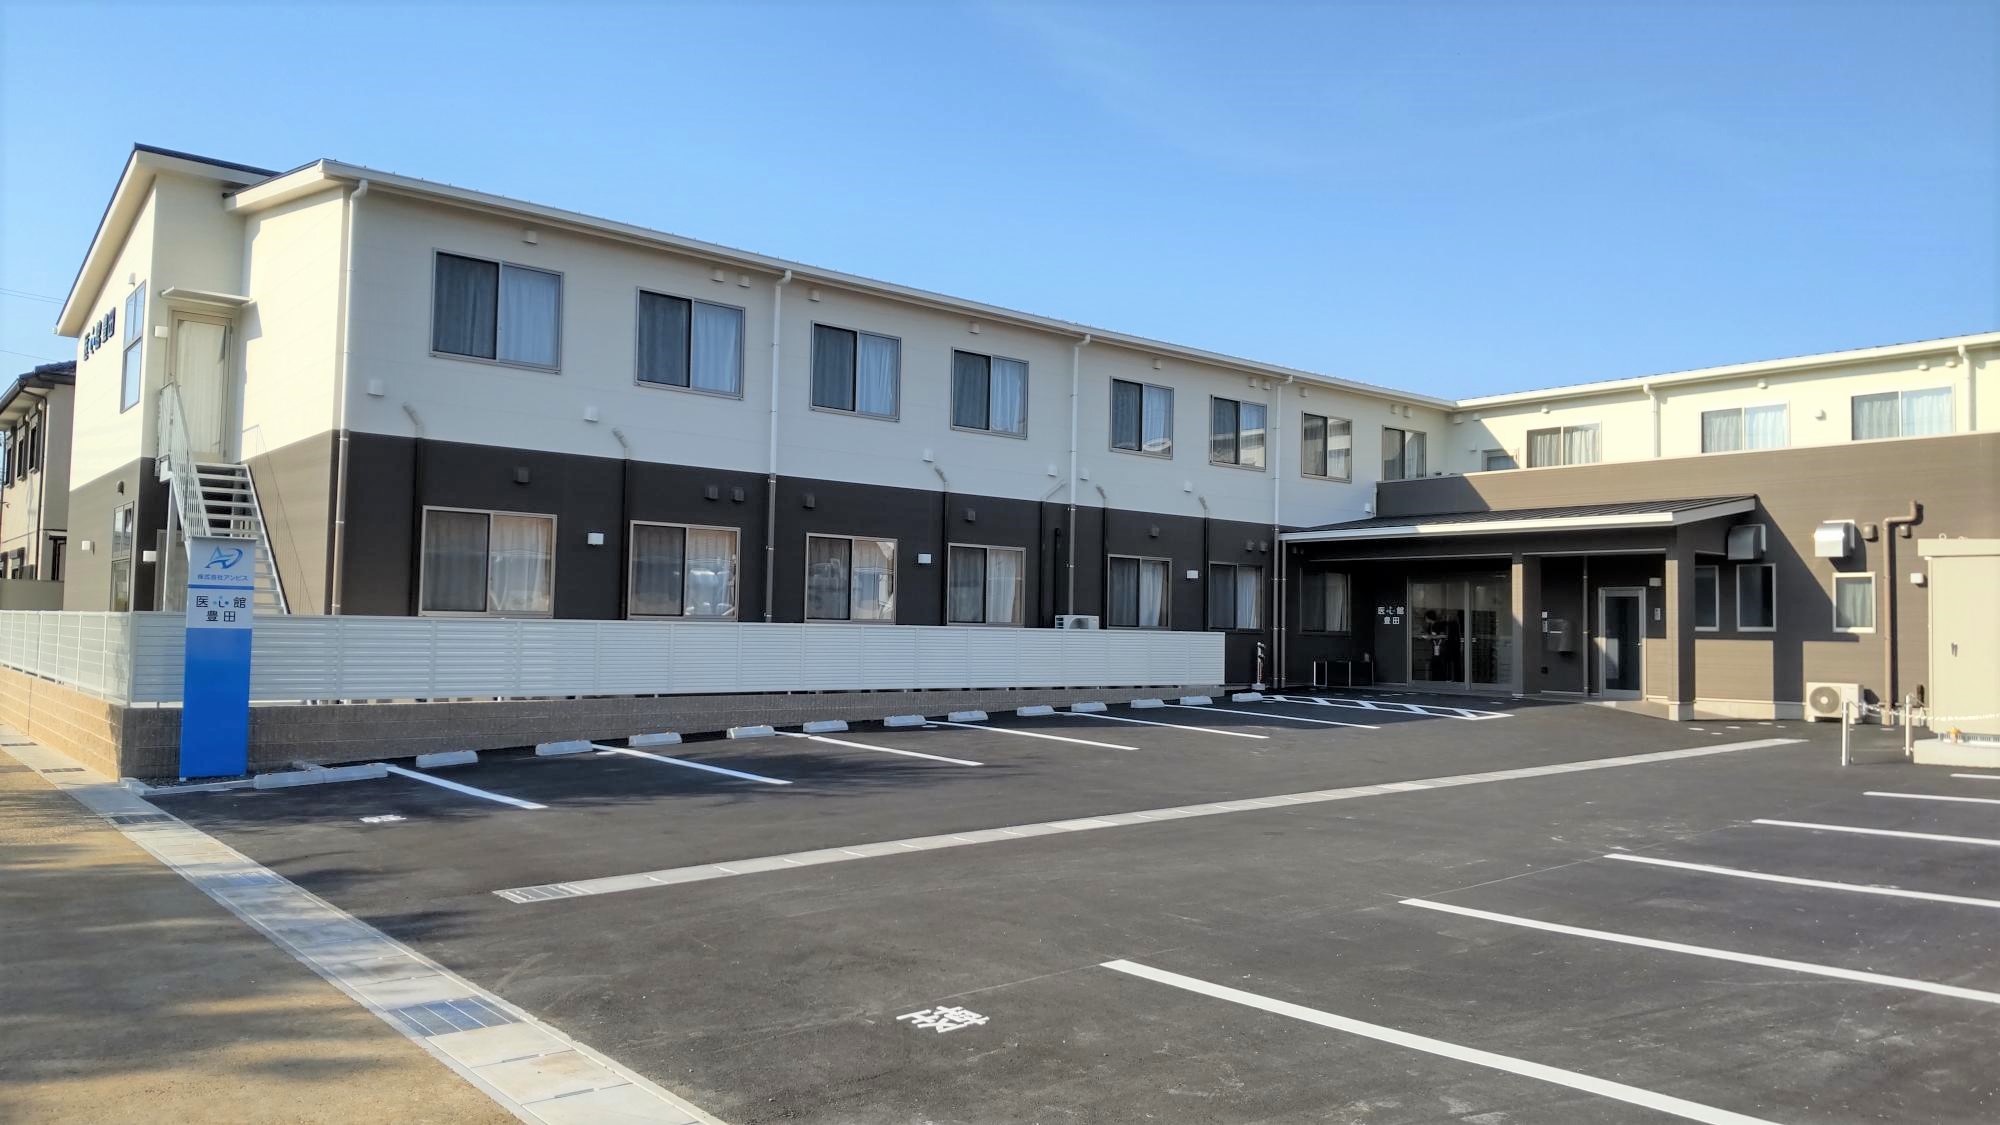 愛知県では６施設目となる 有料老人ホーム「医心館 豊田」をオープンしました